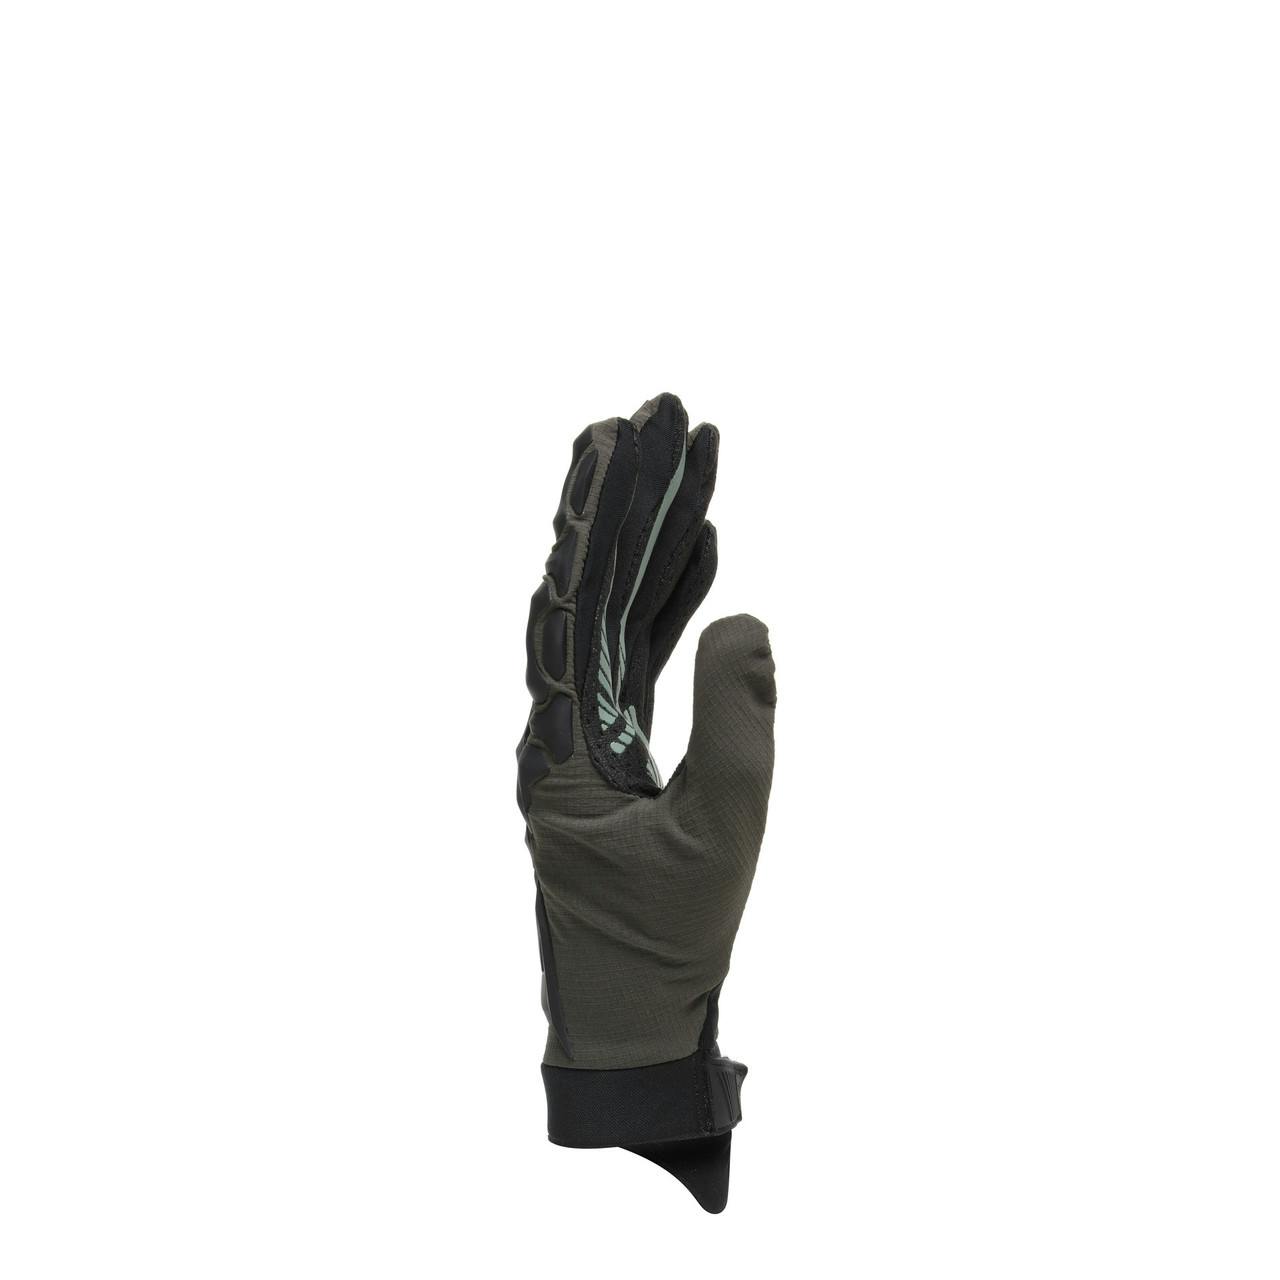 HGR Gloves Ext Black - Military green